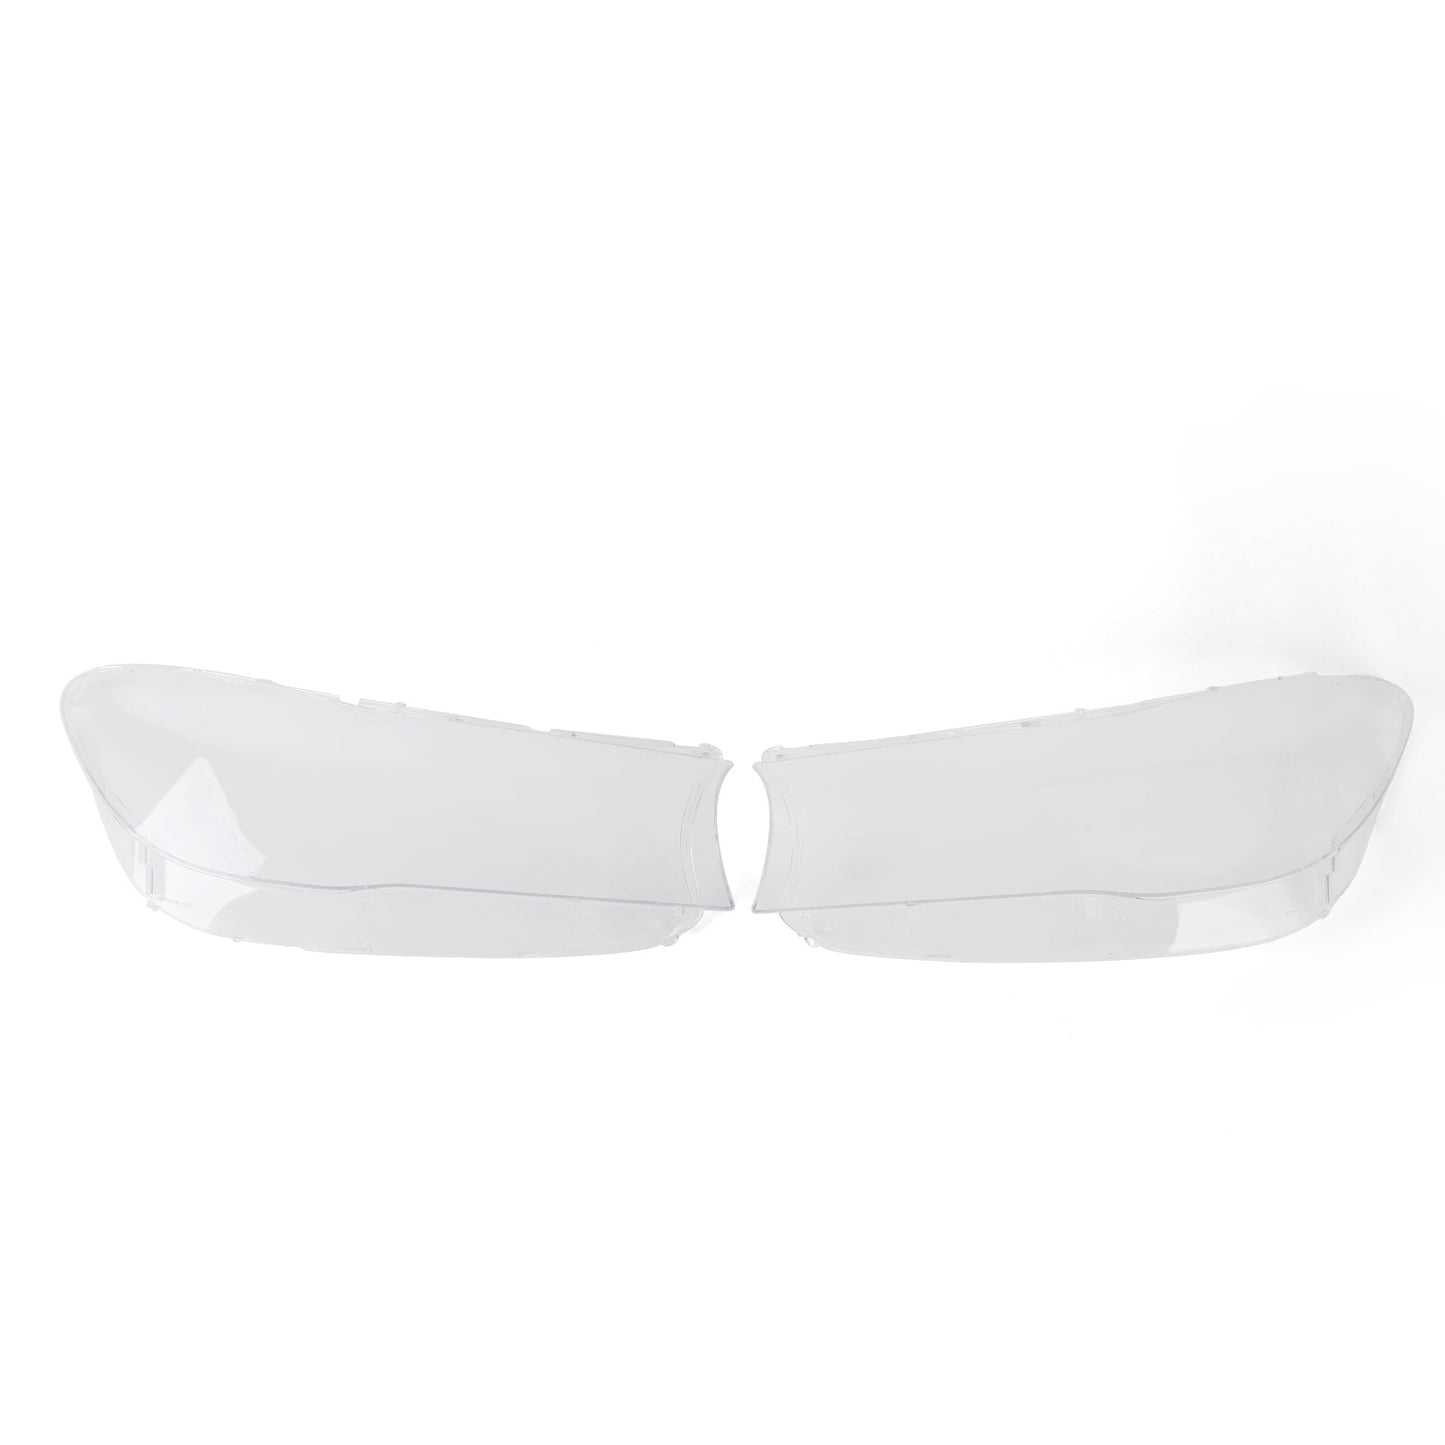 Left +Right Headlight Lens Plastic Cover Shell For BMW 7 G11 G12 2016-2019